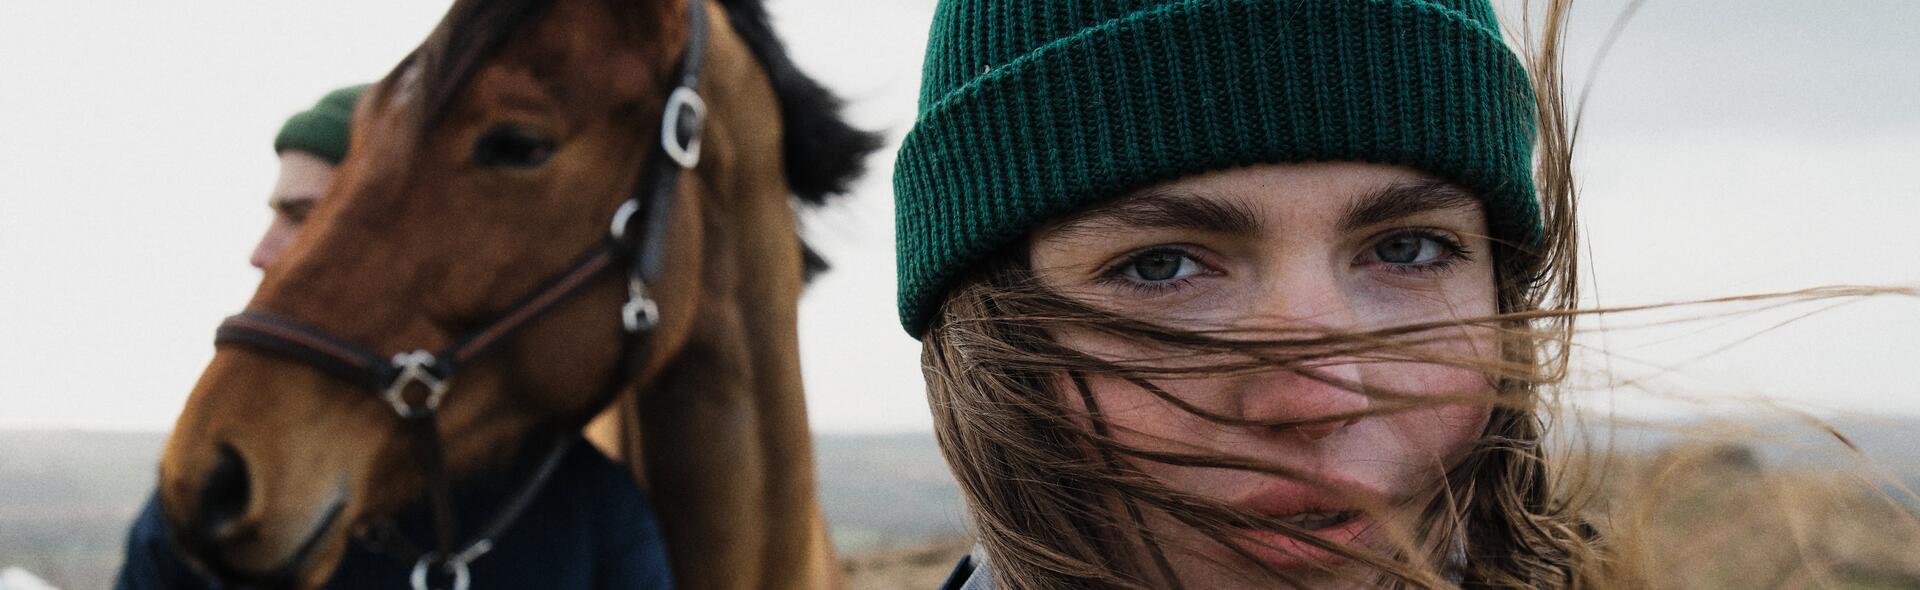 dziewczyna w czapce stojąca obok konia